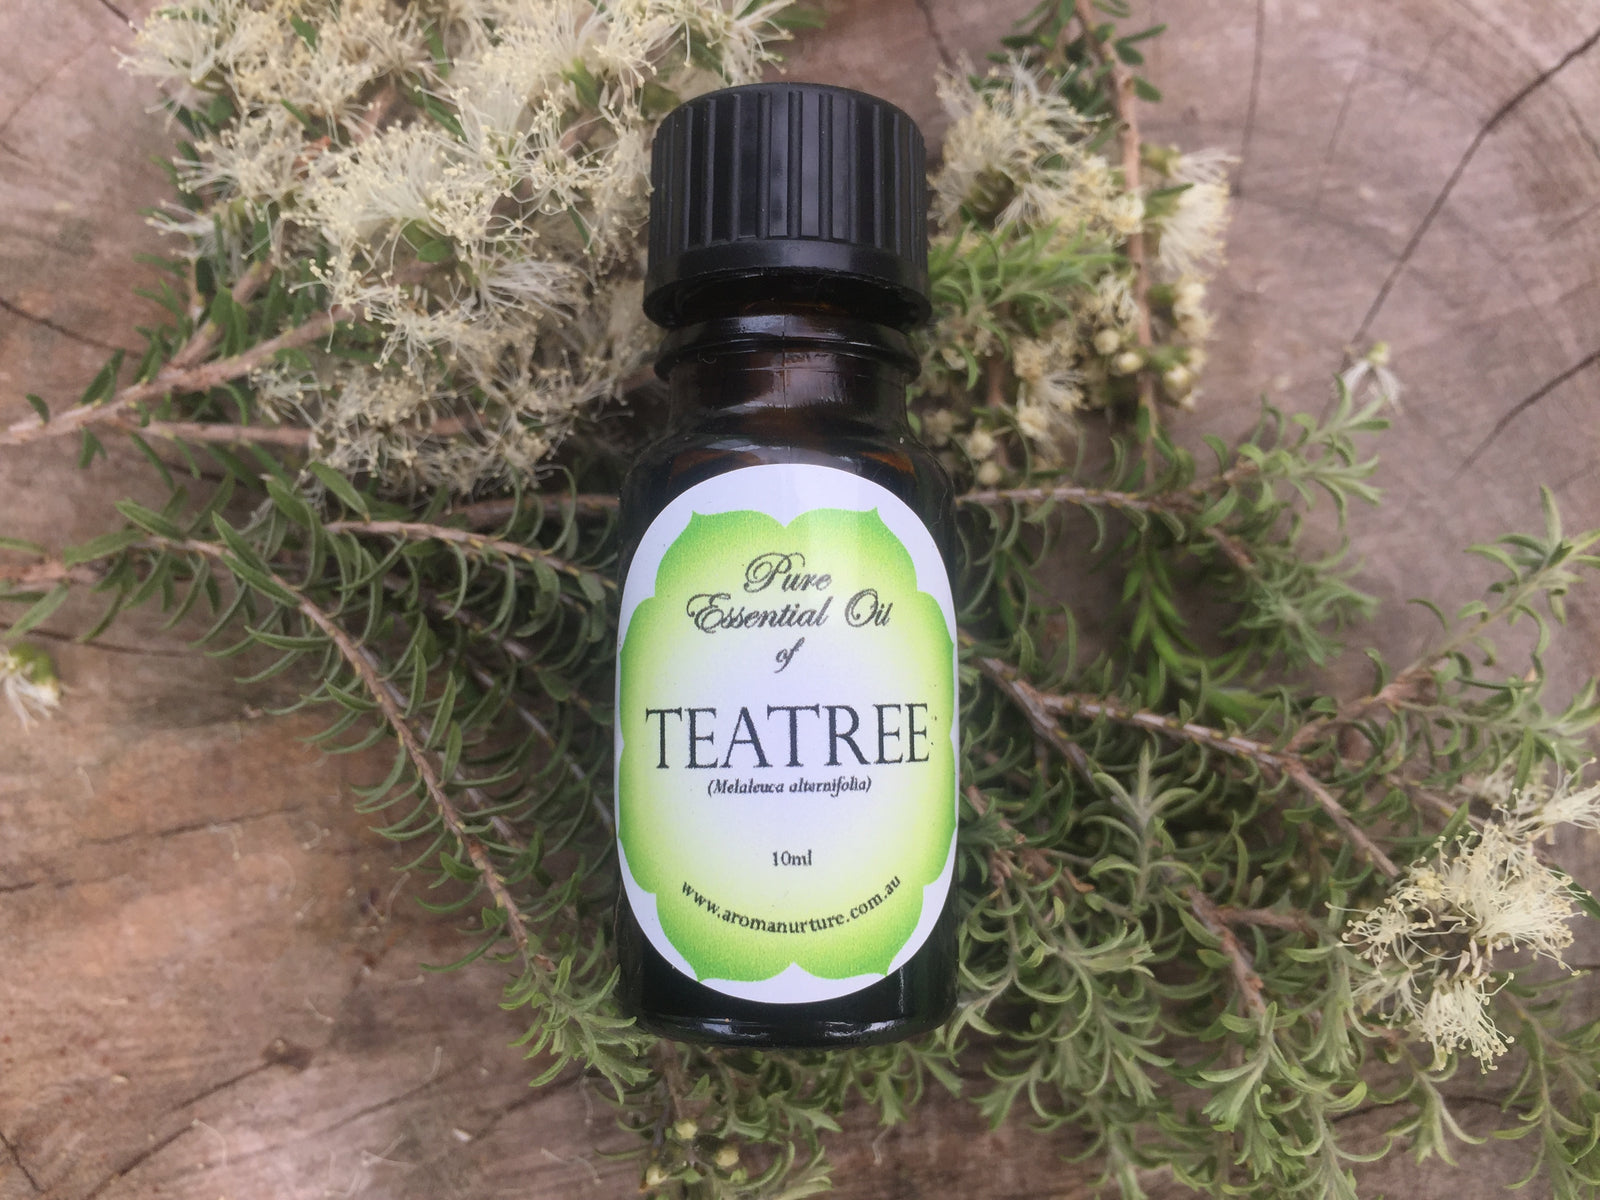 Pure Essential Oil of Teatree 10mls. (Melaleuca alternifolia).